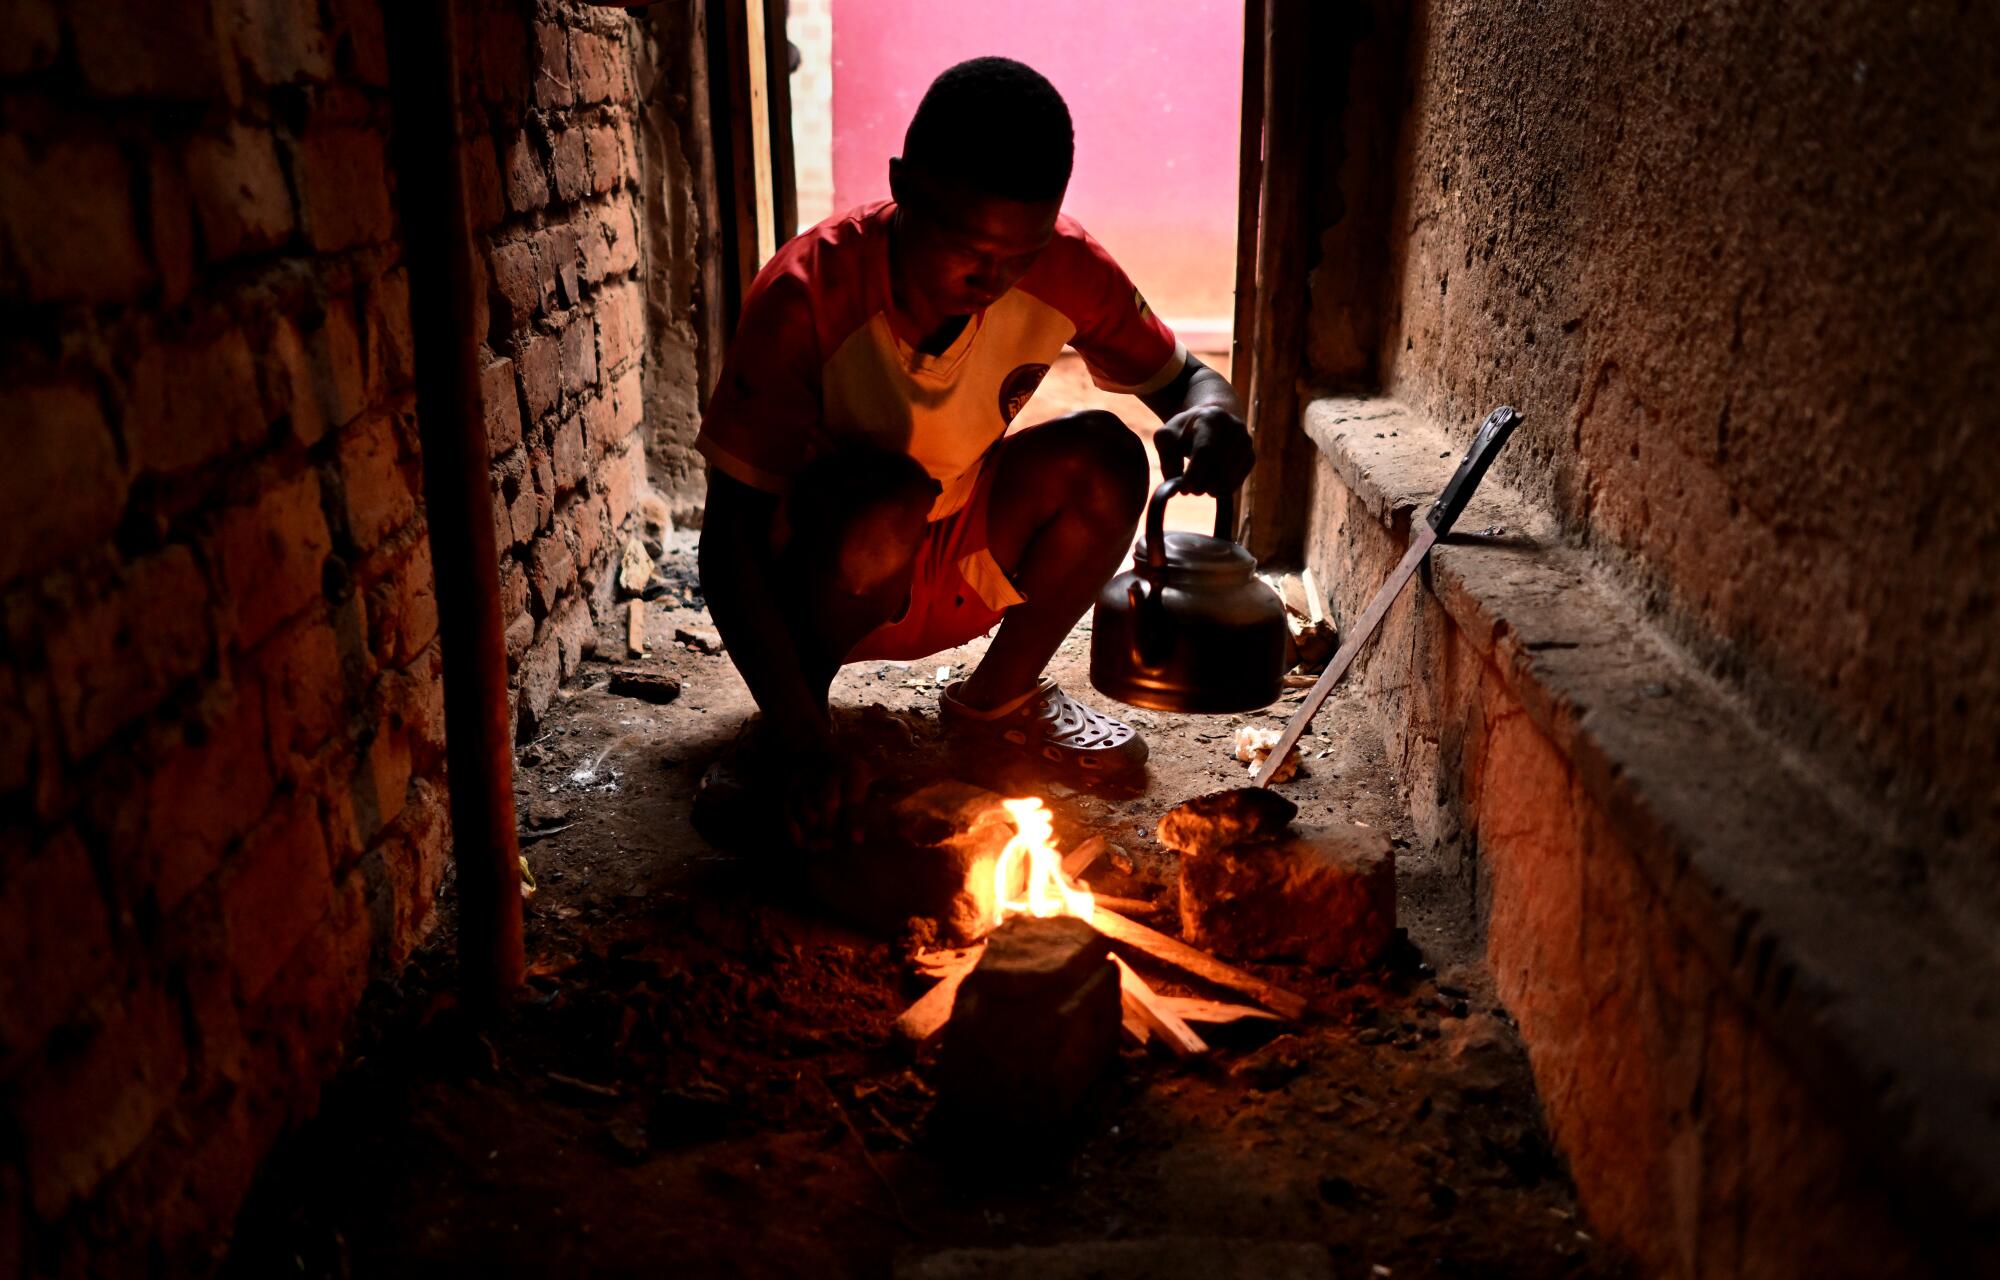 Dennis Kasumba, Uganda'daki evlerinde büyükannesine çay yapmak için ateş yakıyor.